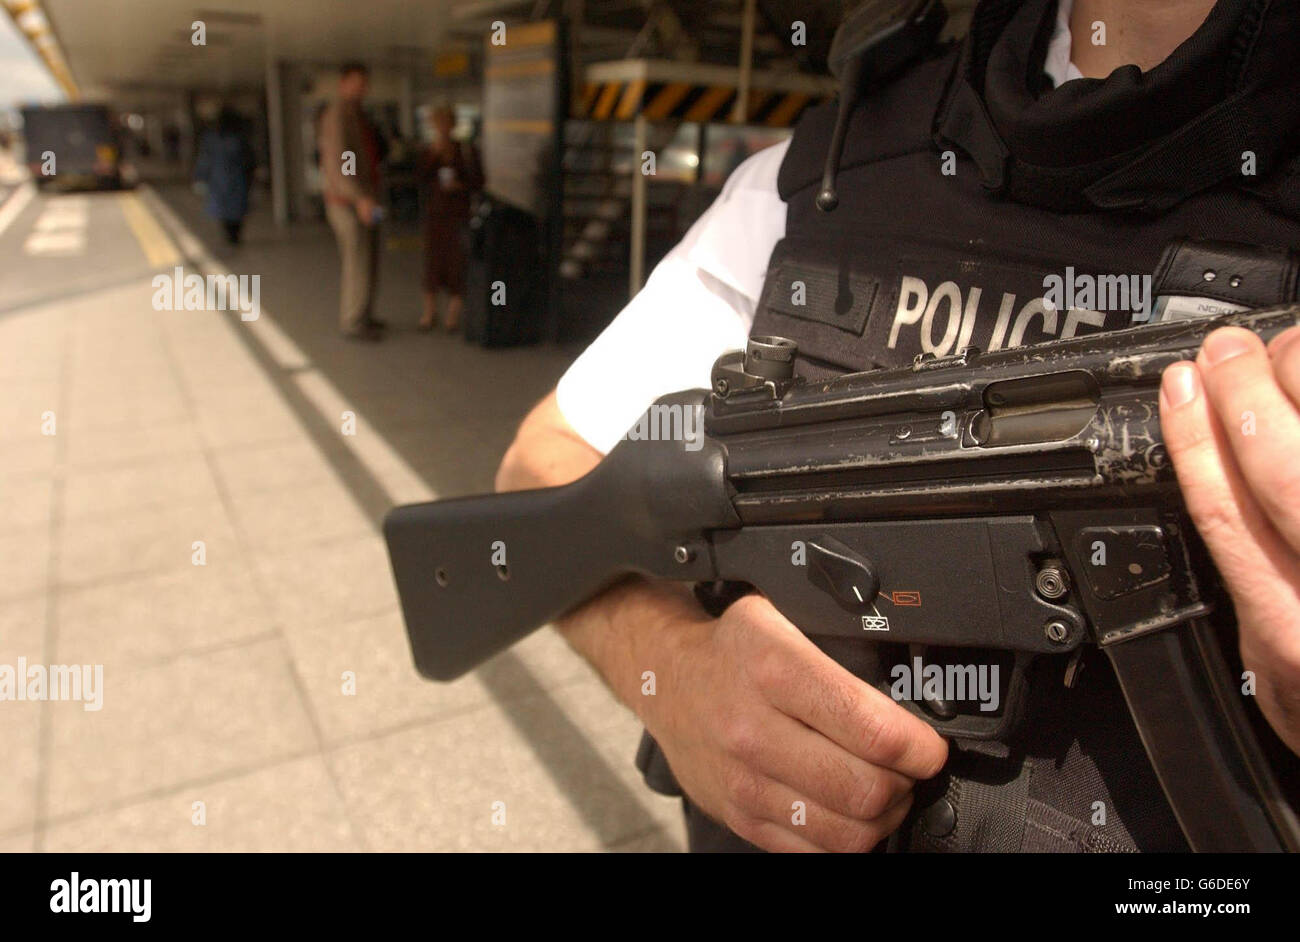 Polizia armata in pattuglia all'aeroporto Heathrow di Londra, in mezzo ad un'elevata sicurezza in tutta la capitale. Foto Stock